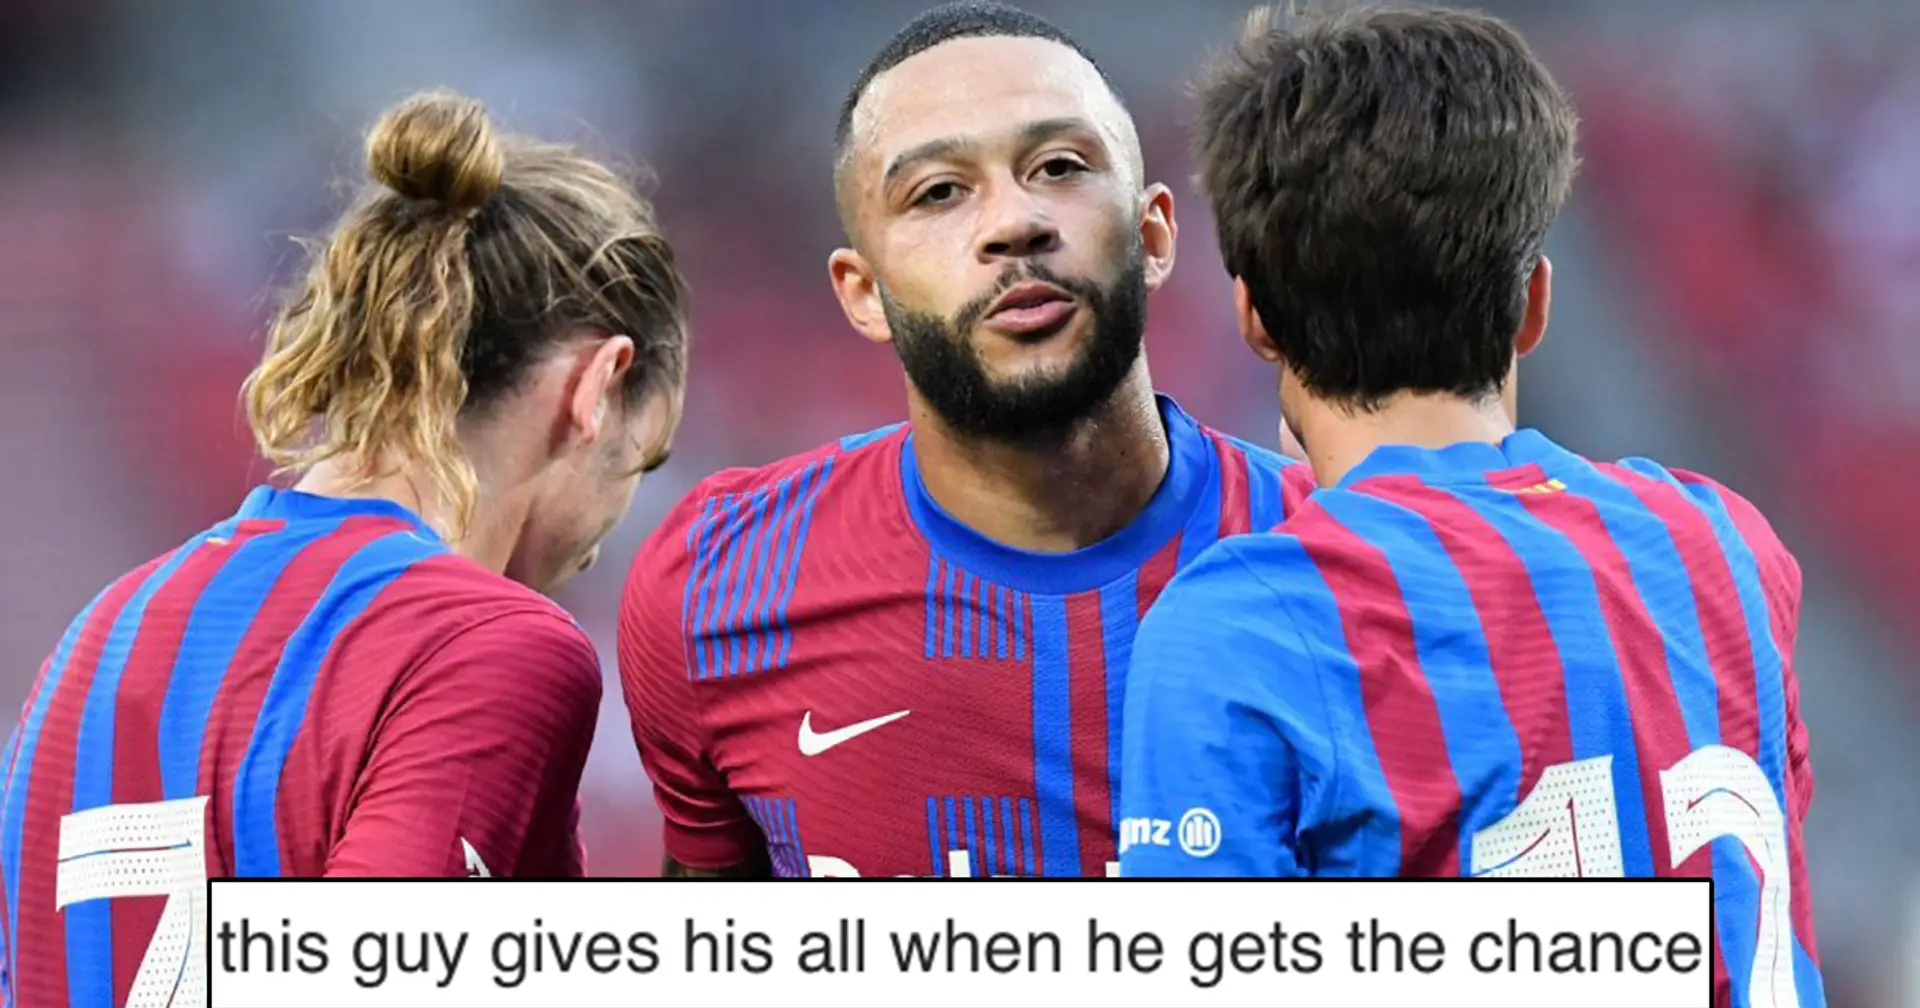 "Il mérite de rester": un fan mentionne un joueur du Barça qui s'est considérablement amélioré au milieu des rumeurs de départ